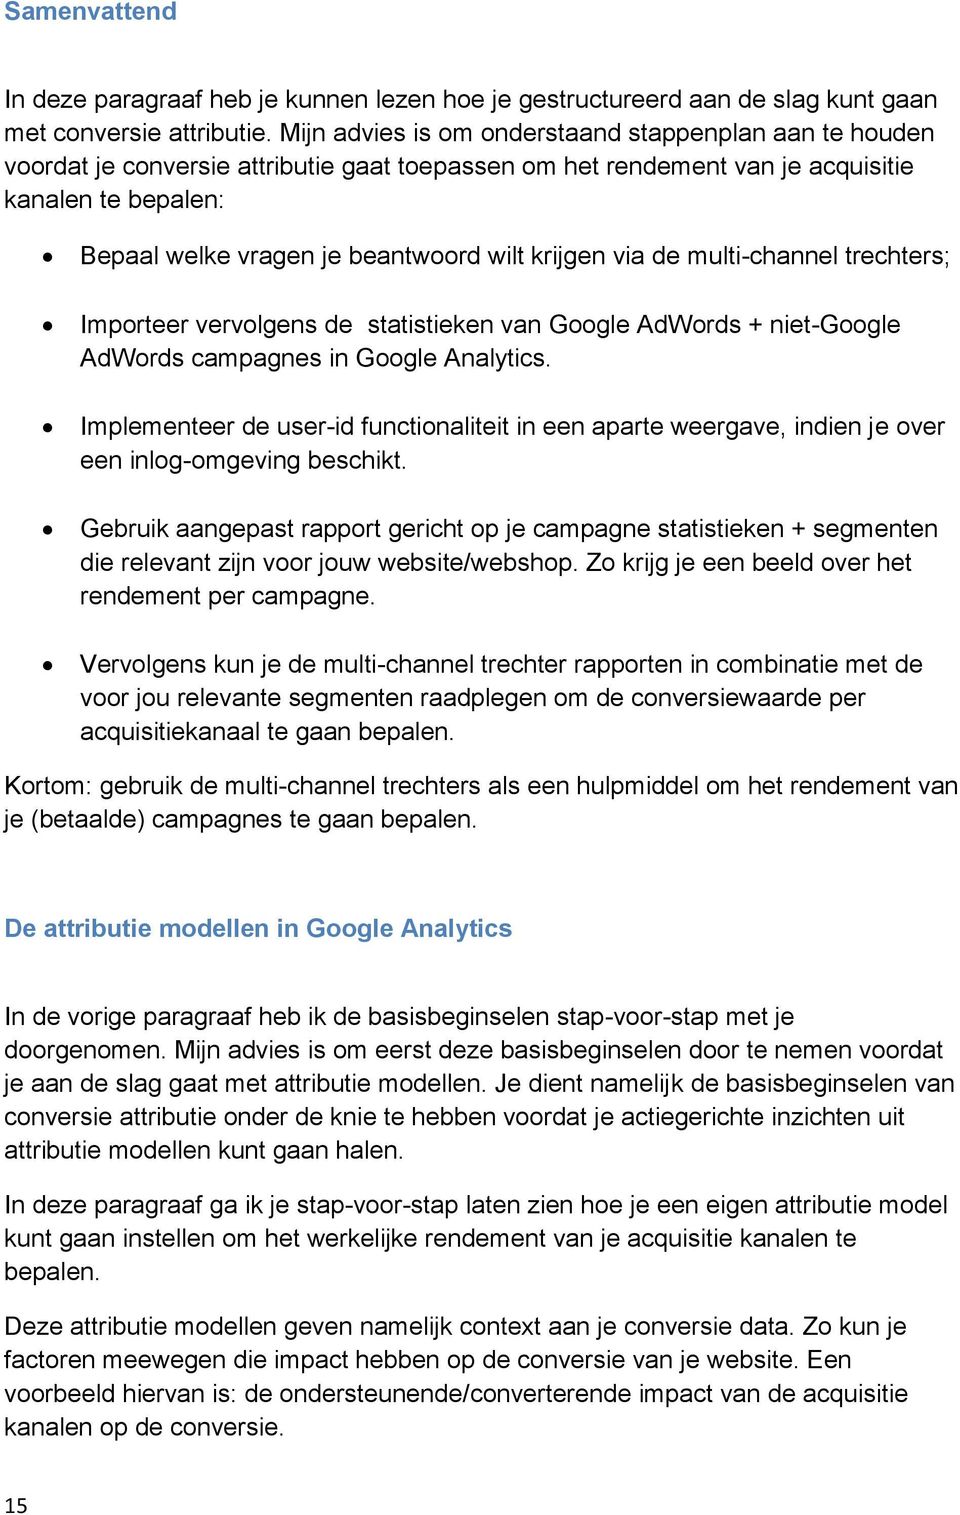 krijgen via de multi-channel trechters; Importeer vervolgens de statistieken van Google AdWords + niet-google AdWords campagnes in Google Analytics.